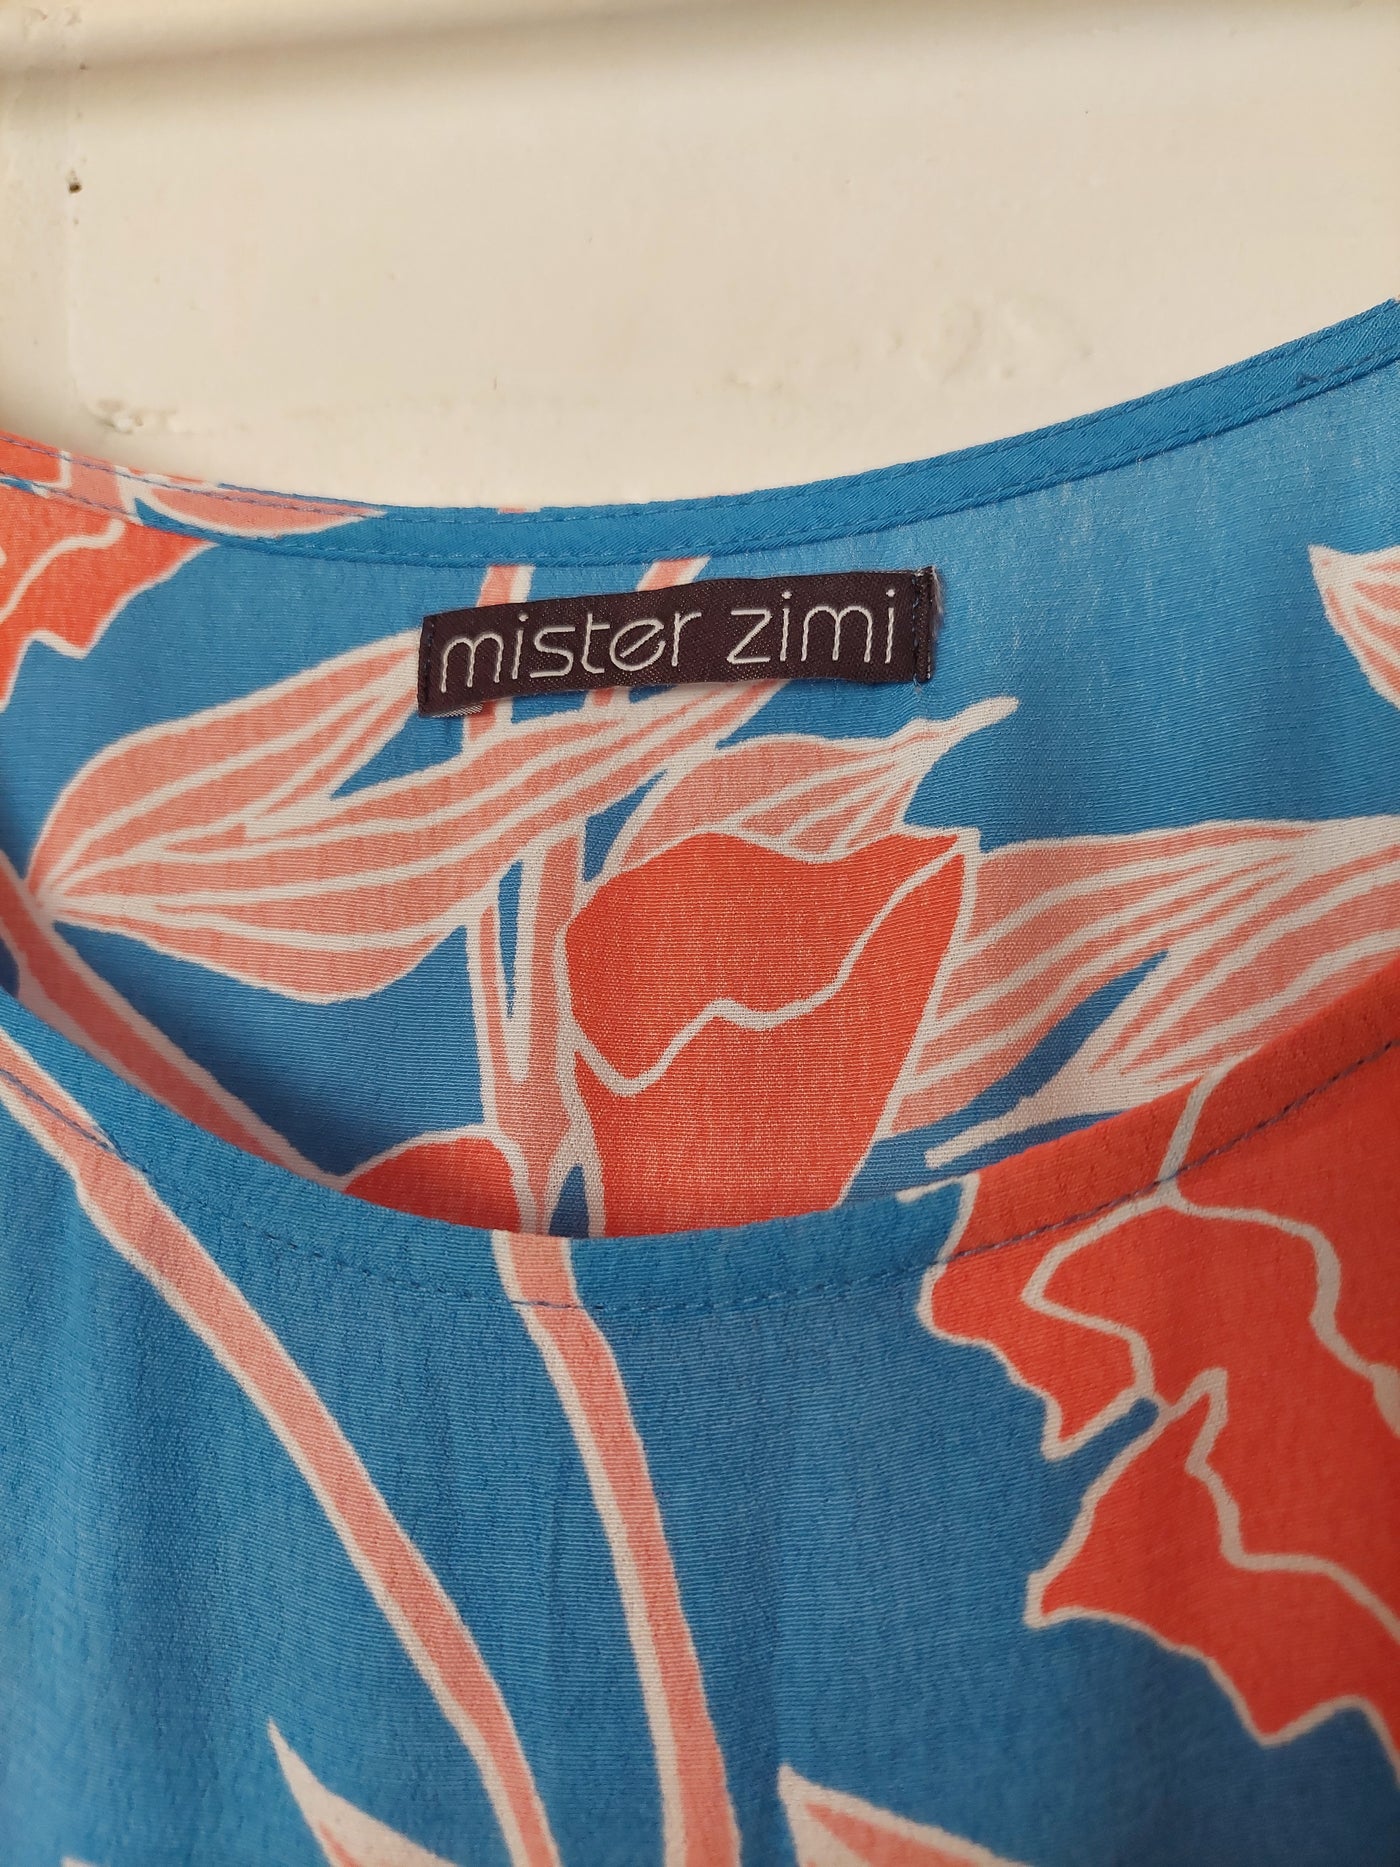 Mister Zimi 'Polly' Midi Dress in St Tropez, Size 12-14